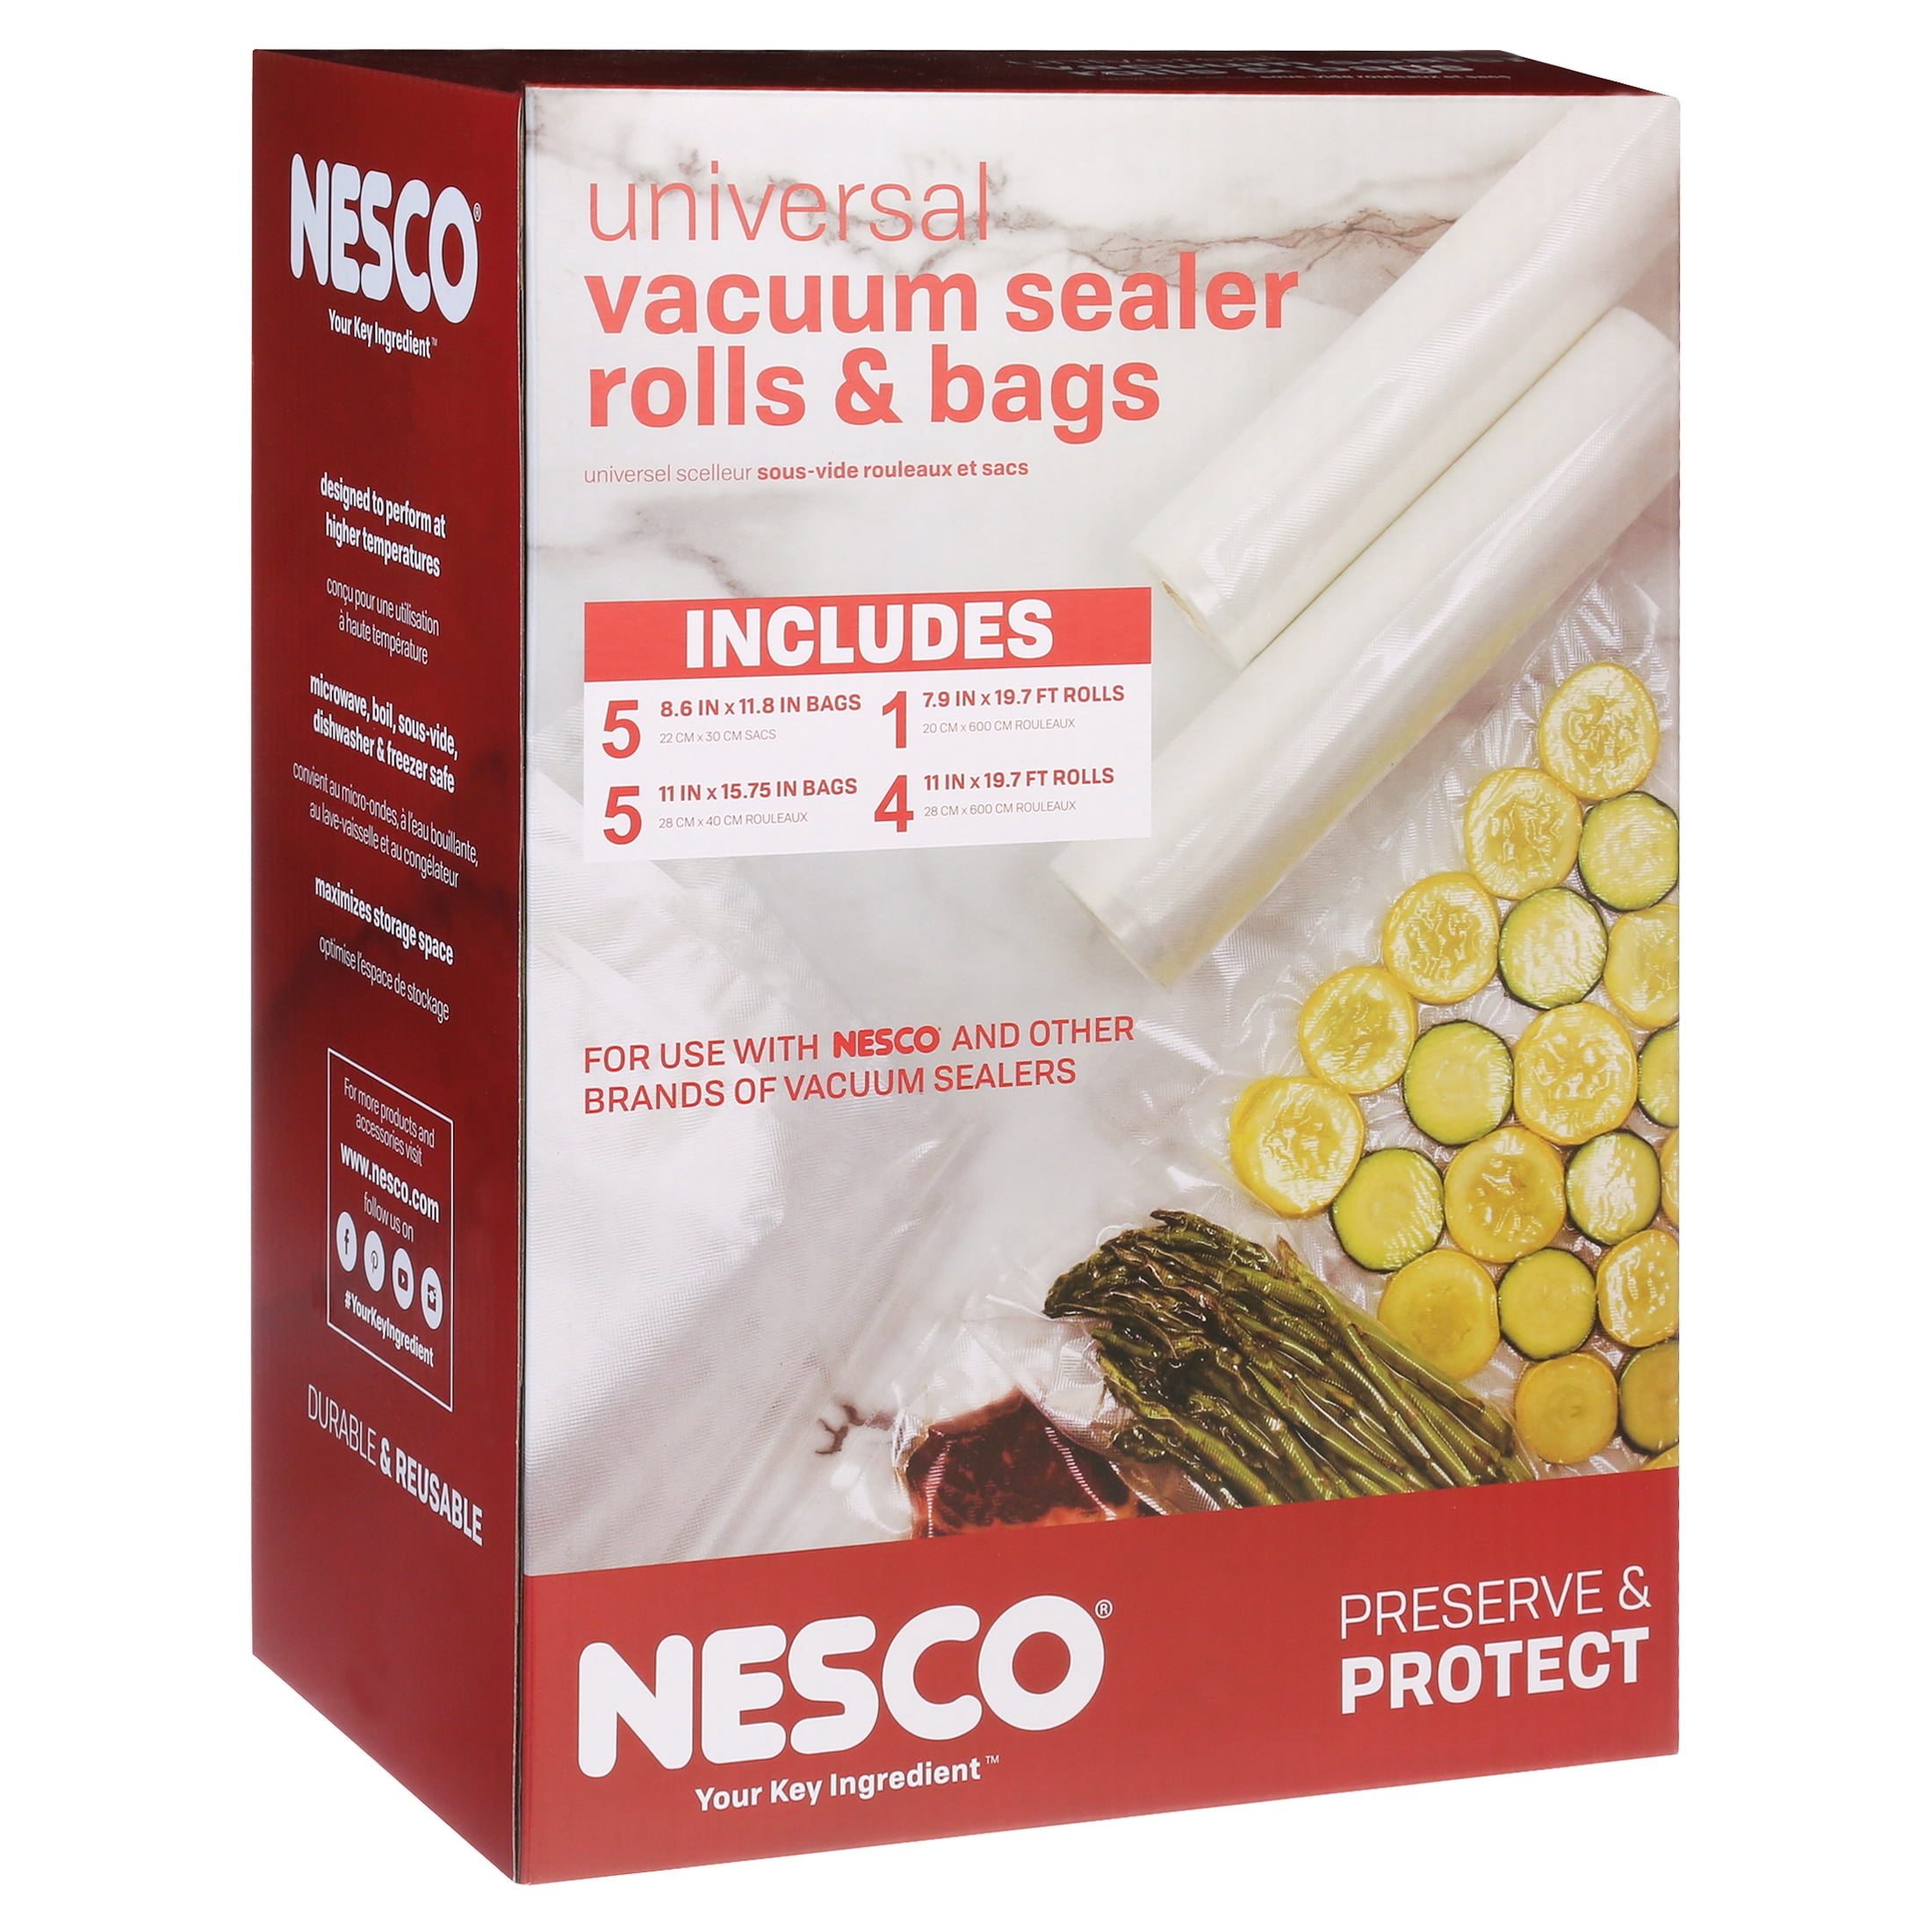 Nesco VS-07V Vacuum Sealer Bag Variety Pack